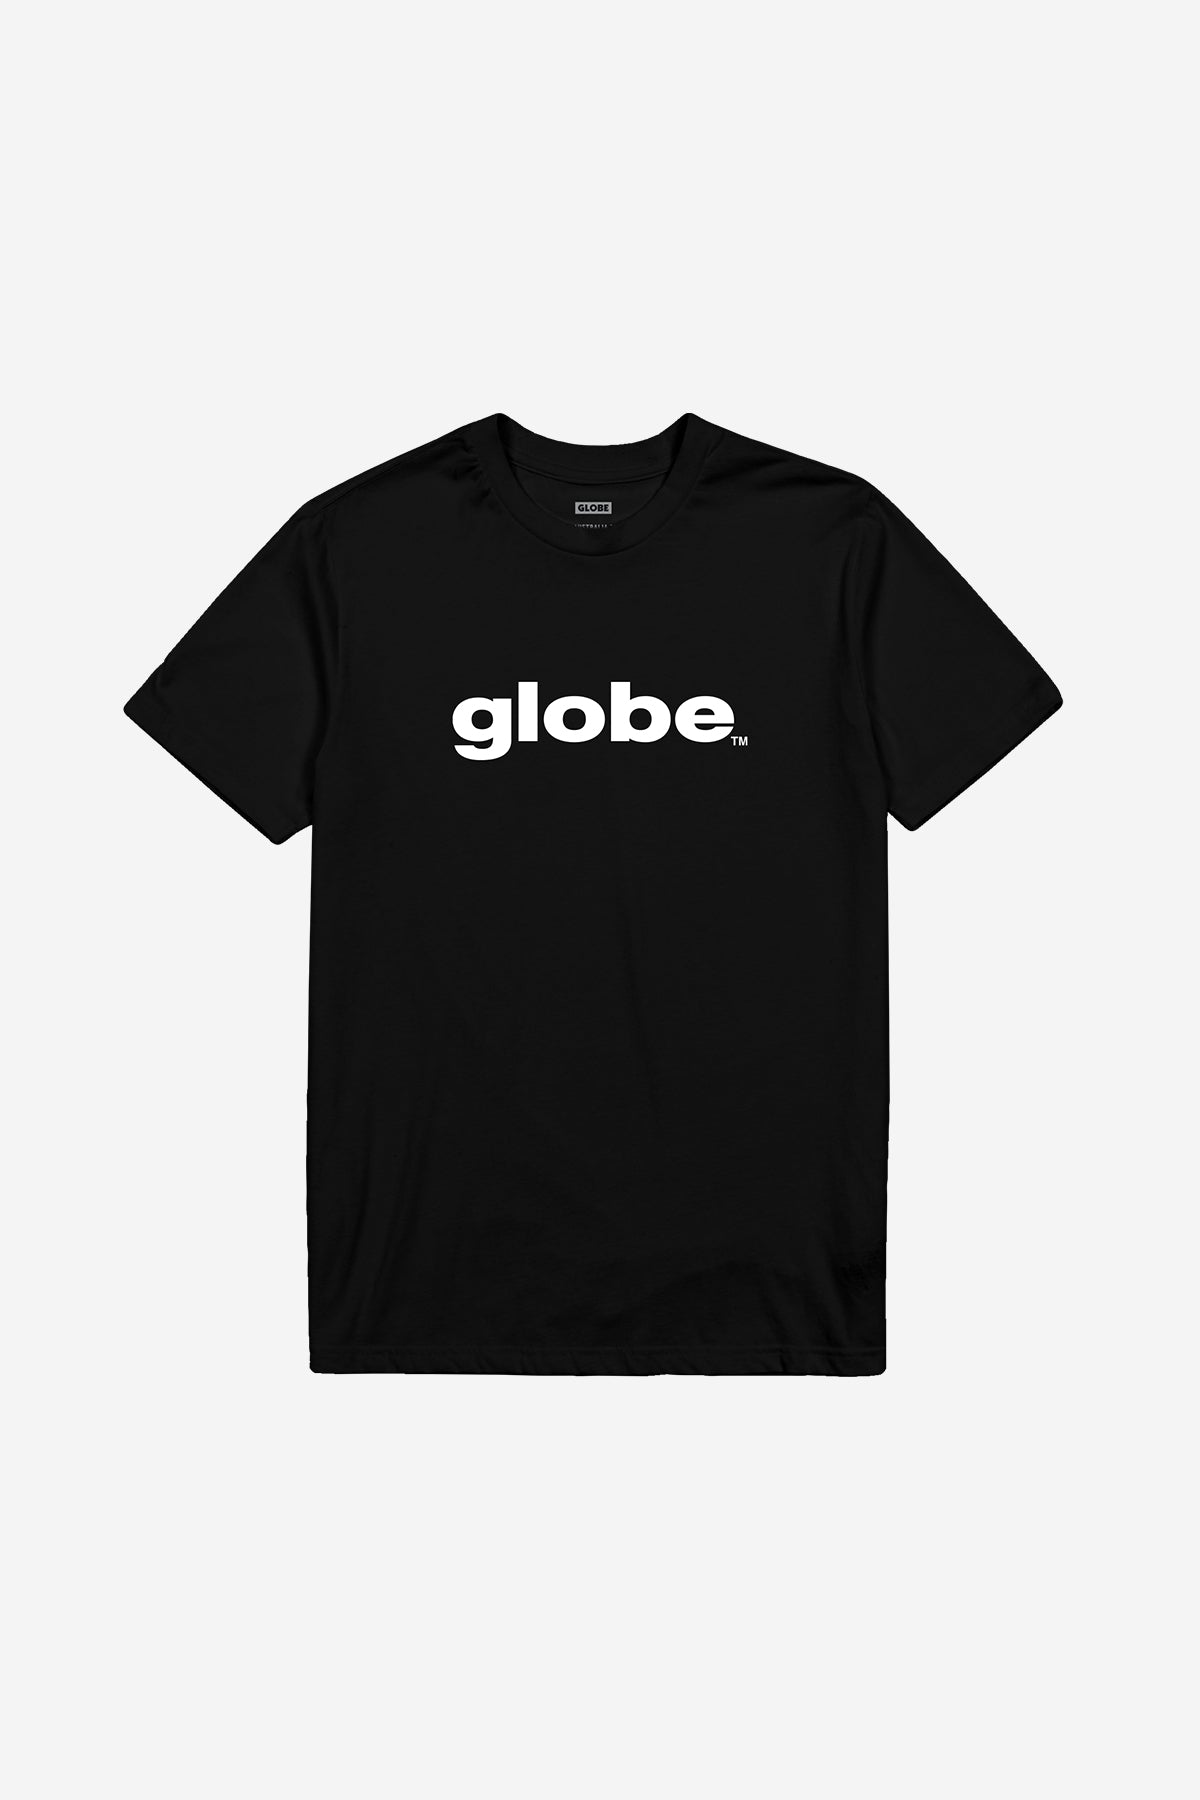 Globe - Maglietta O.G - Nero